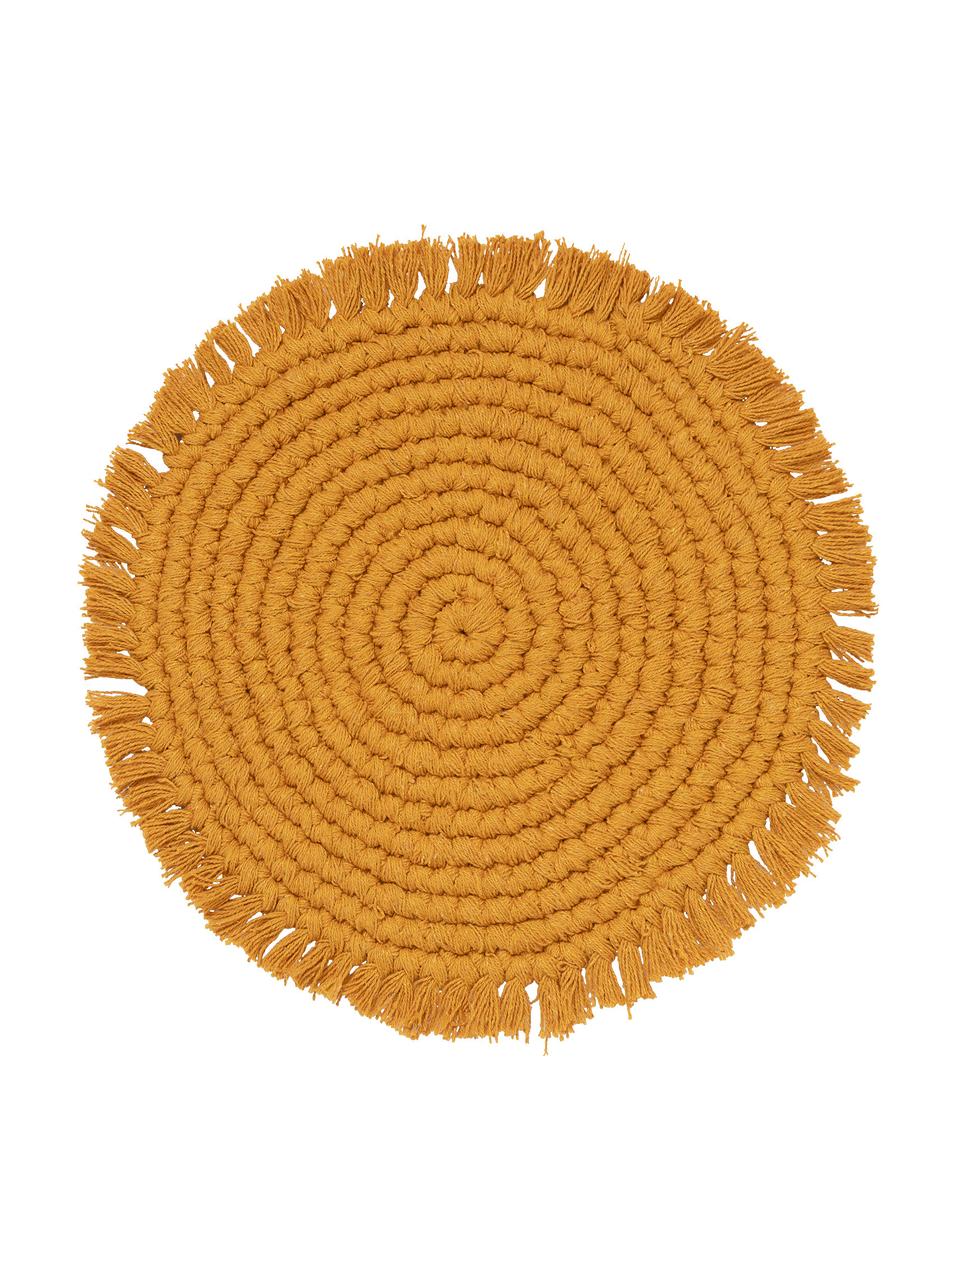 Okrúhle prestieranie z bavlny so strapcami Vera, 100 %  bavlna, Horčičová, Ø 38 cm